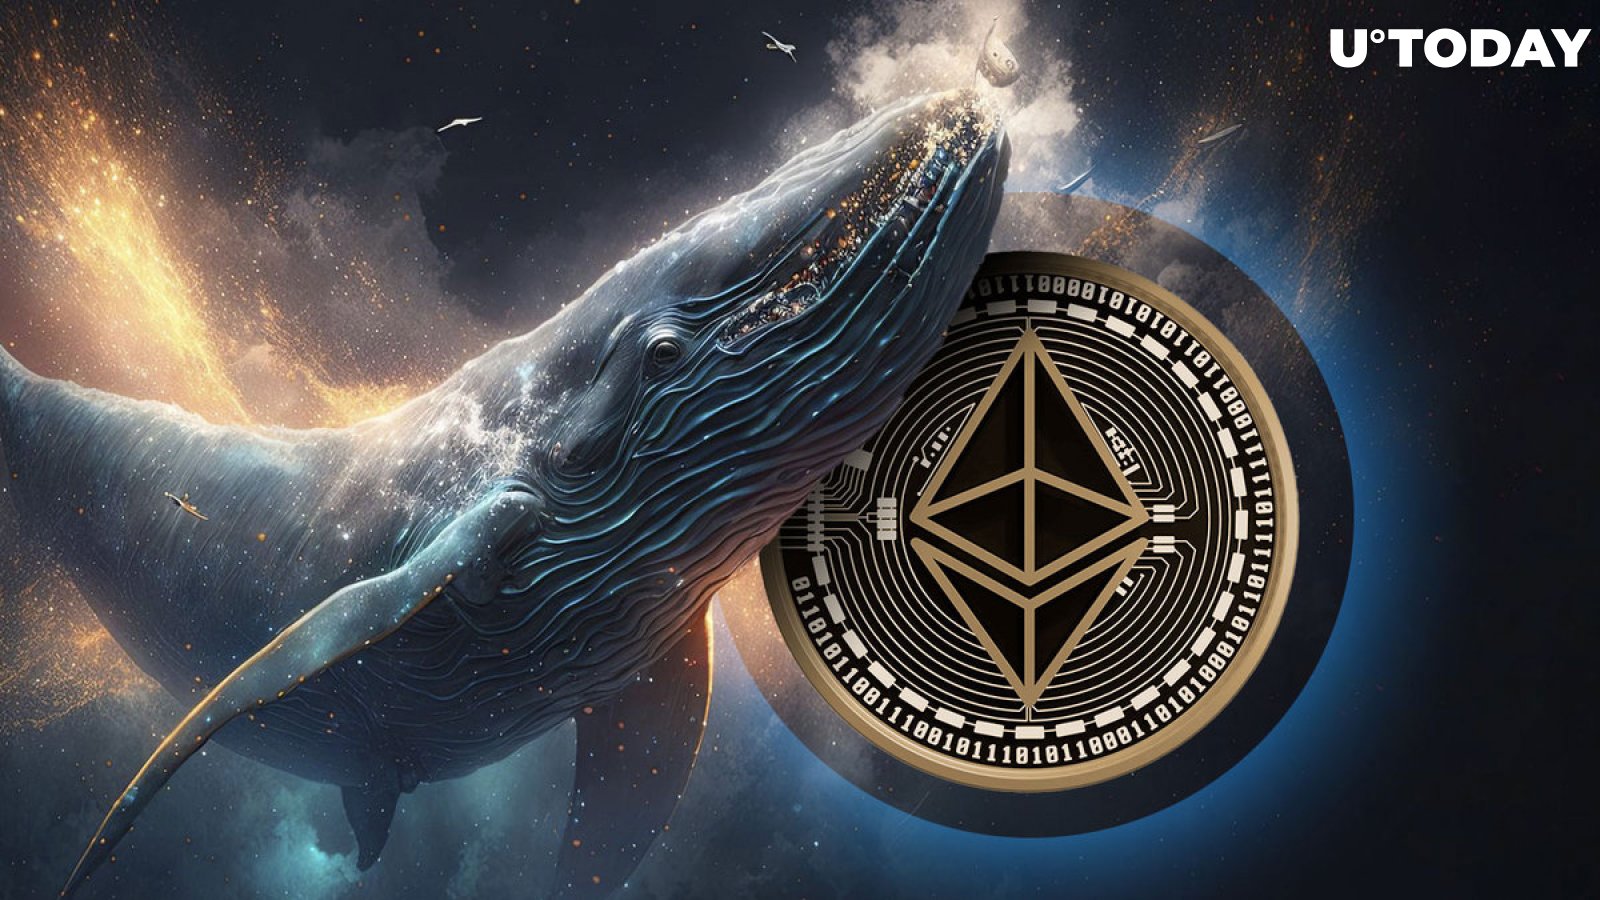 Comment Ethereum Whale risque la liquidation après avoir acheté 25,674 XNUMX ETH : détails